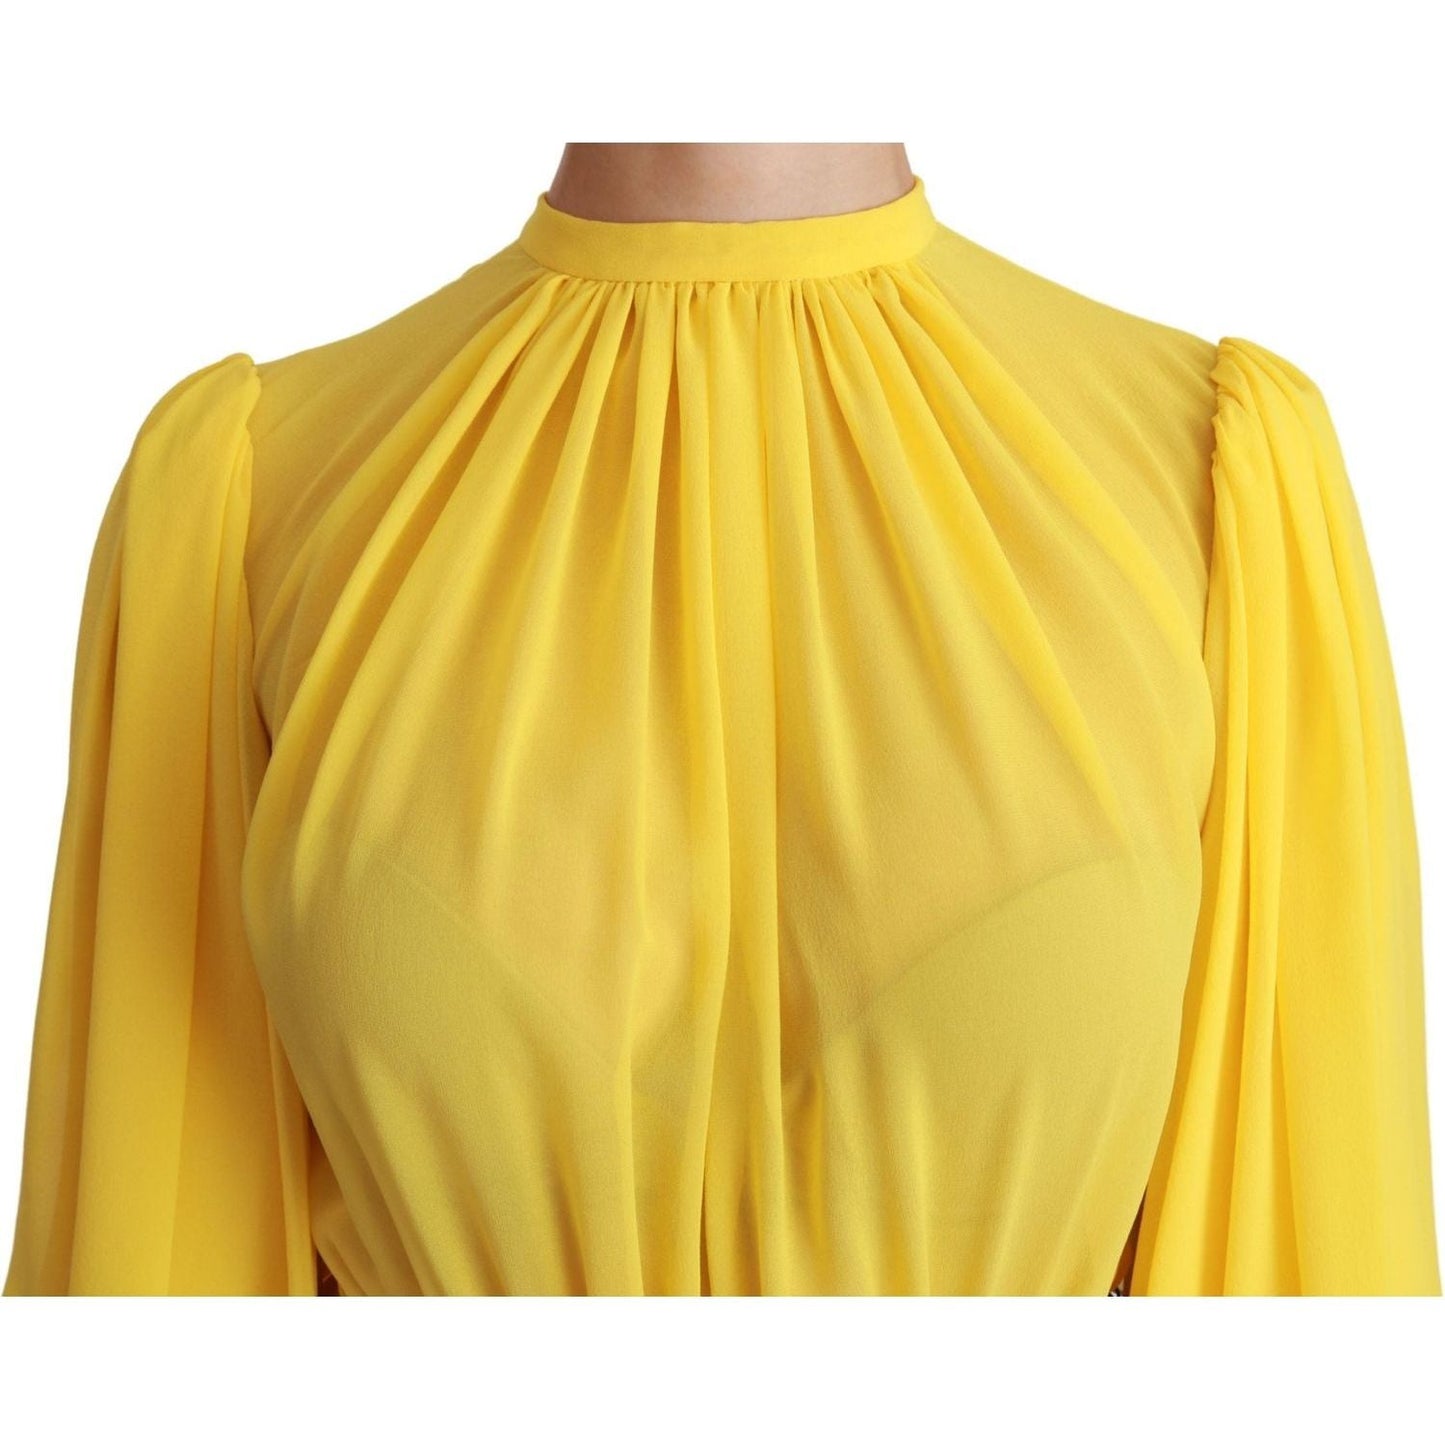 Dolce & Gabbana Silk Pleated A-line Mini Dress in Sunshine Yellow yellow-pleated-a-line-mini-100-silk-dress